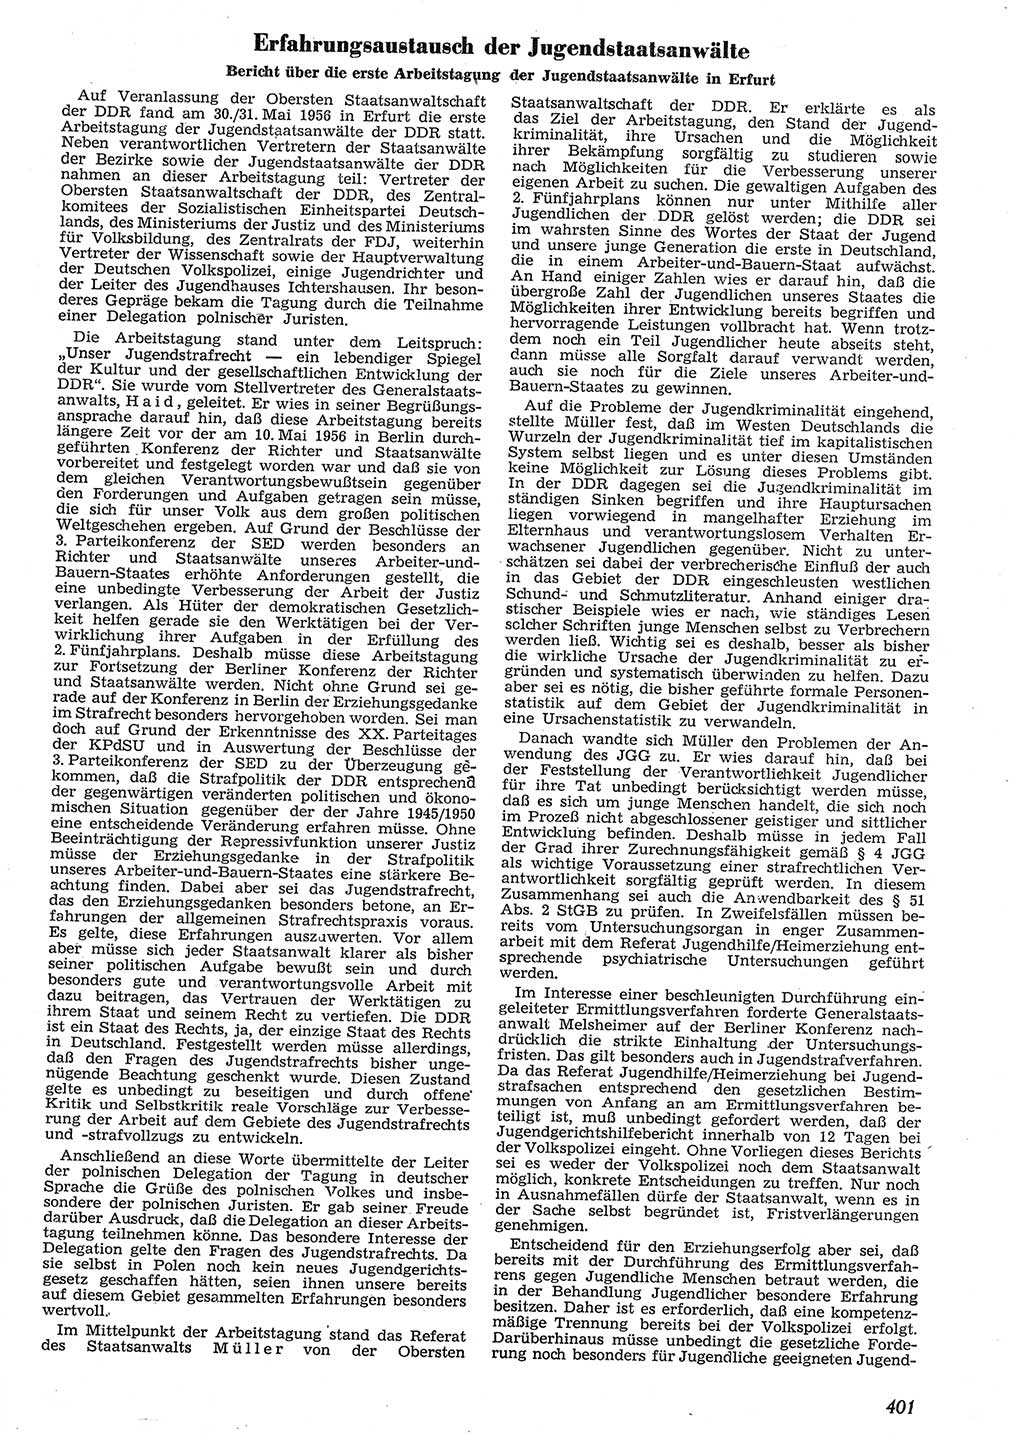 Neue Justiz (NJ), Zeitschrift für Recht und Rechtswissenschaft [Deutsche Demokratische Republik (DDR)], 10. Jahrgang 1956, Seite 401 (NJ DDR 1956, S. 401)